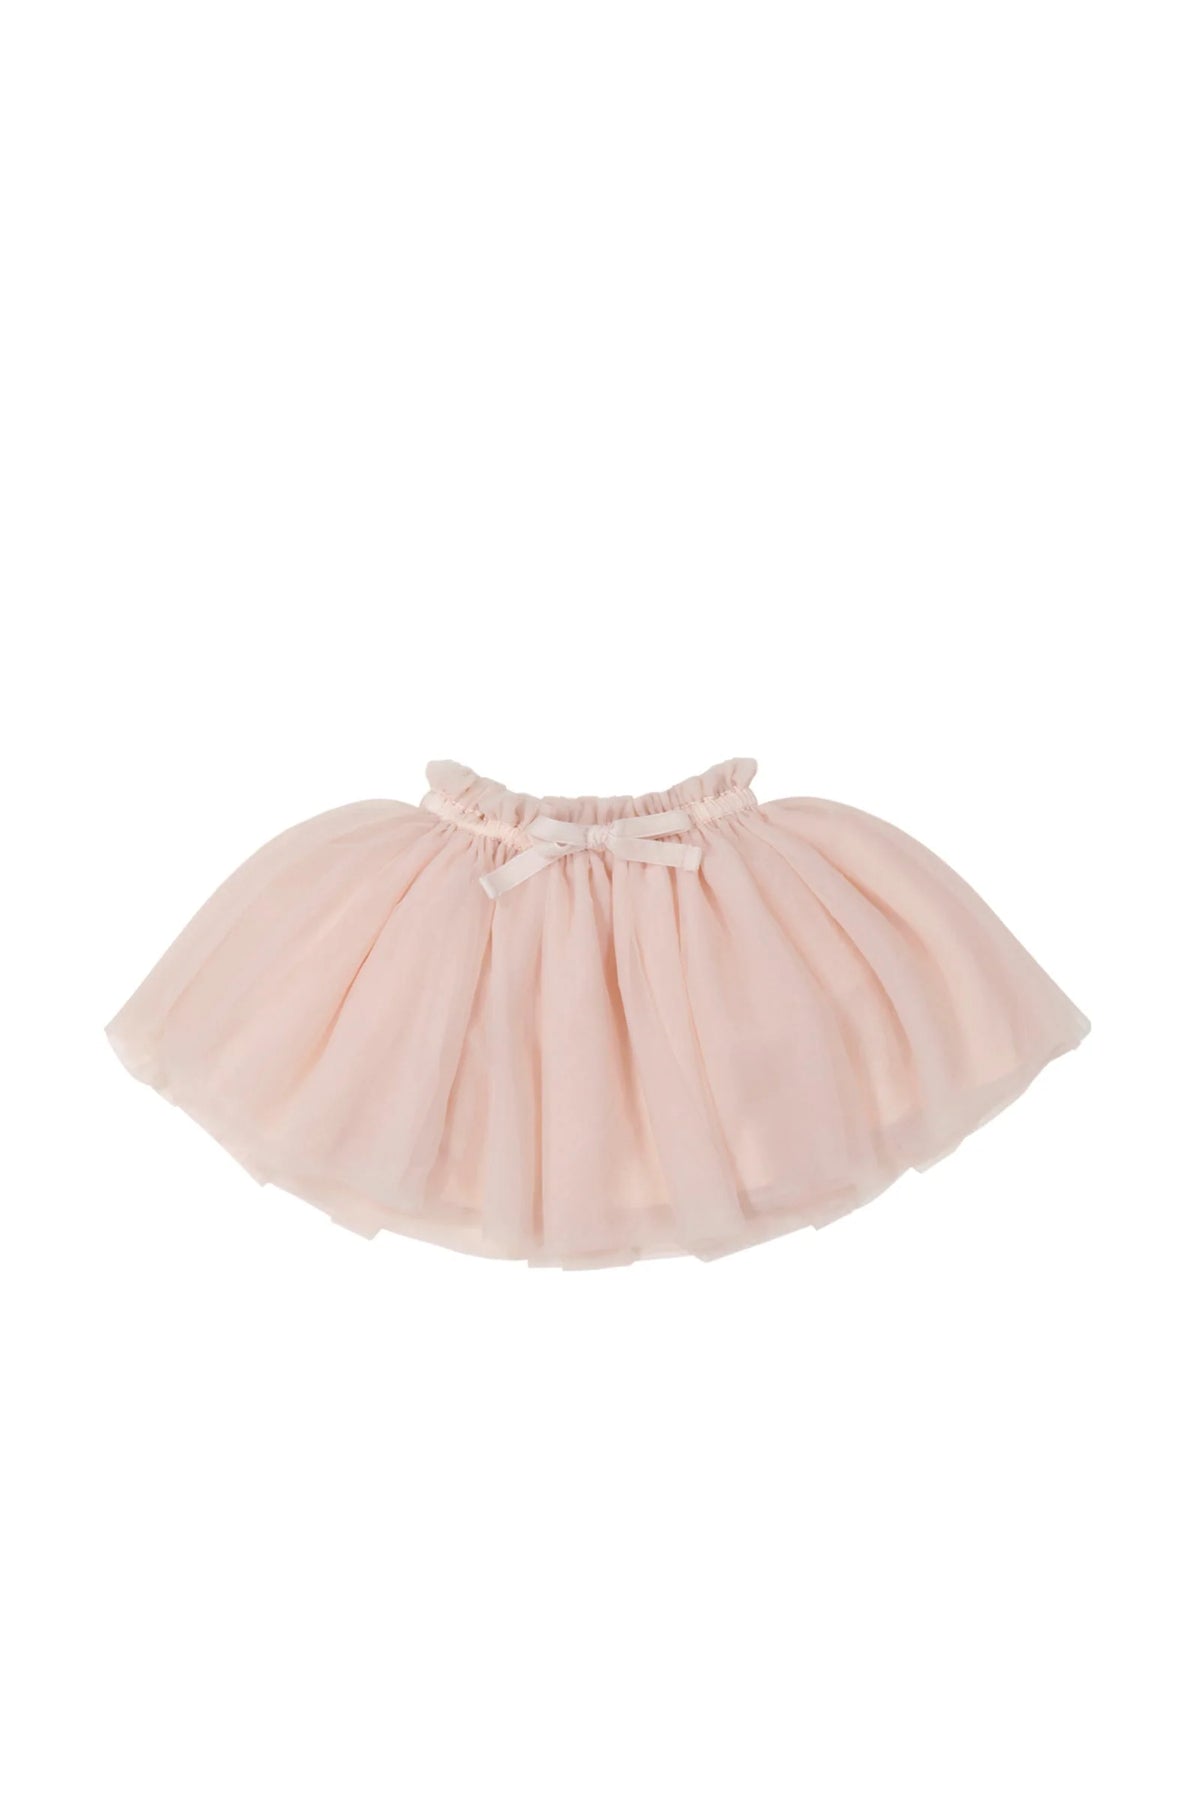 Jamie Kay Soft Tulle Skirt | Boto Pink